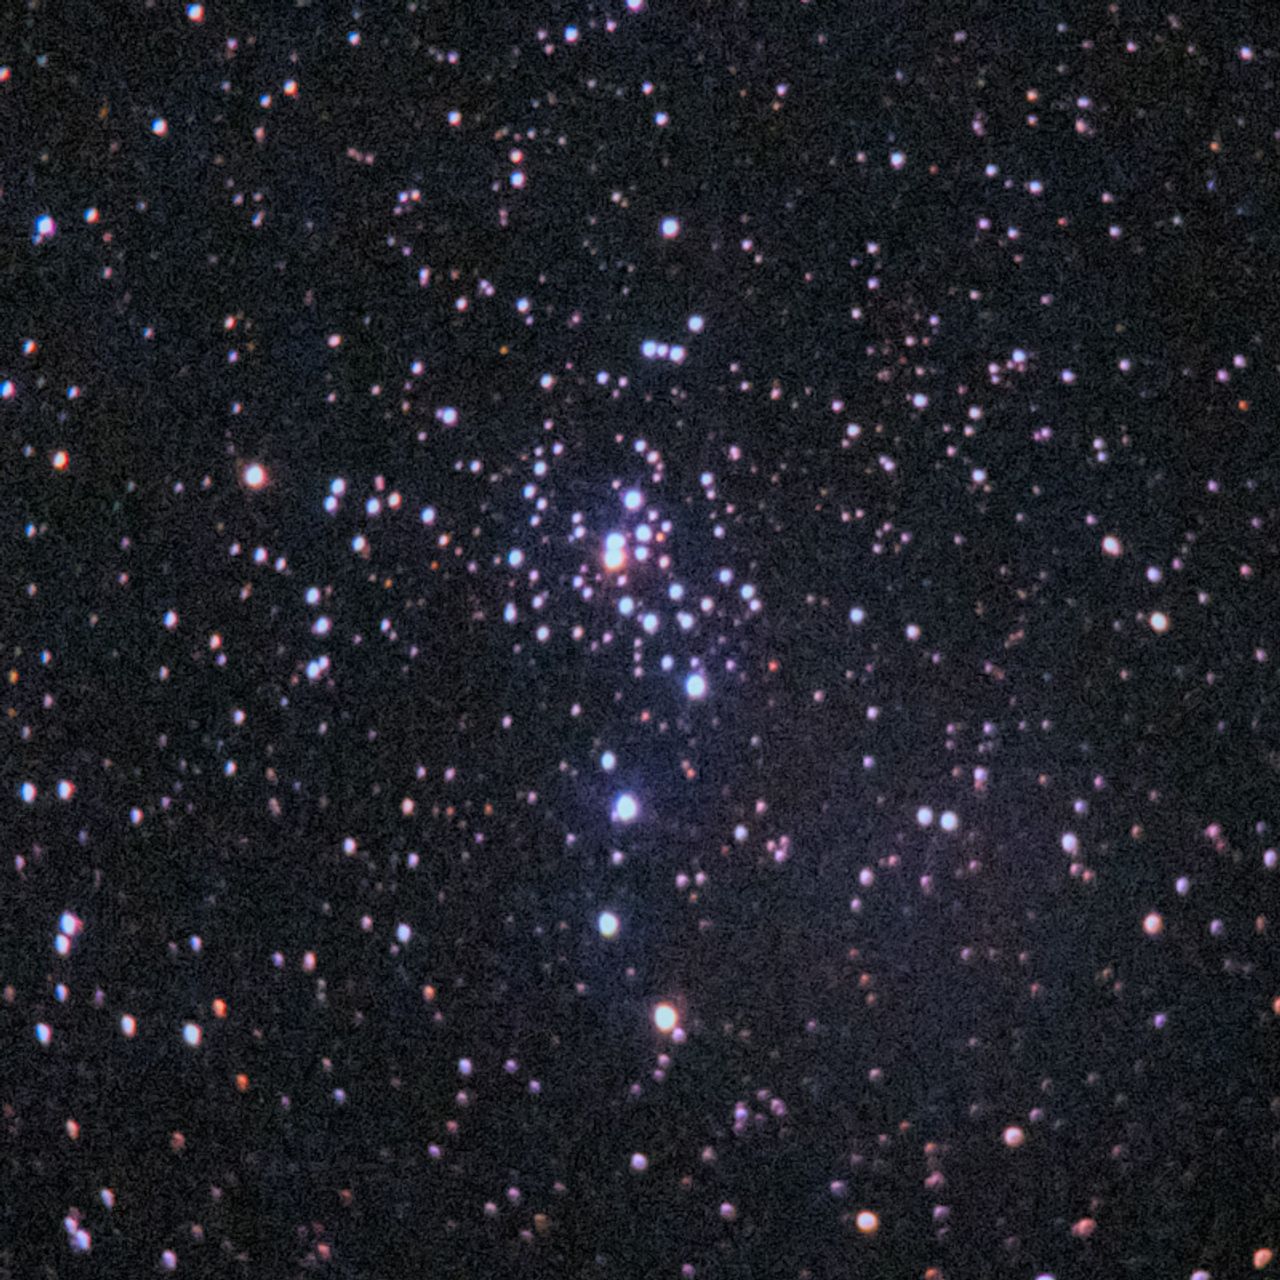 NGC2301